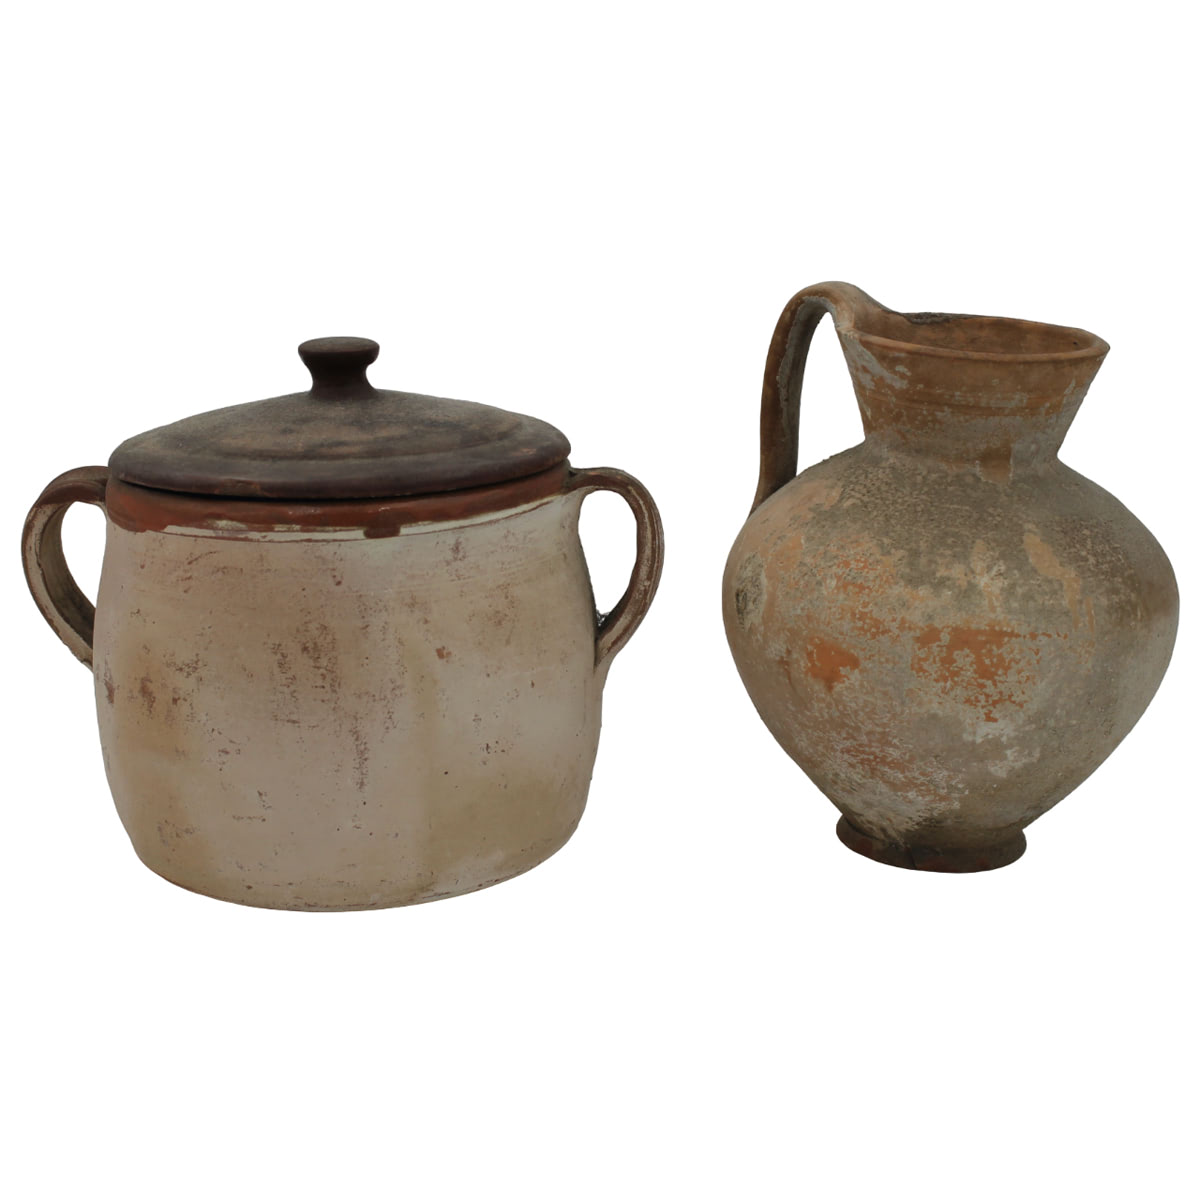 Una brocca e un contenitore - A jug and a container